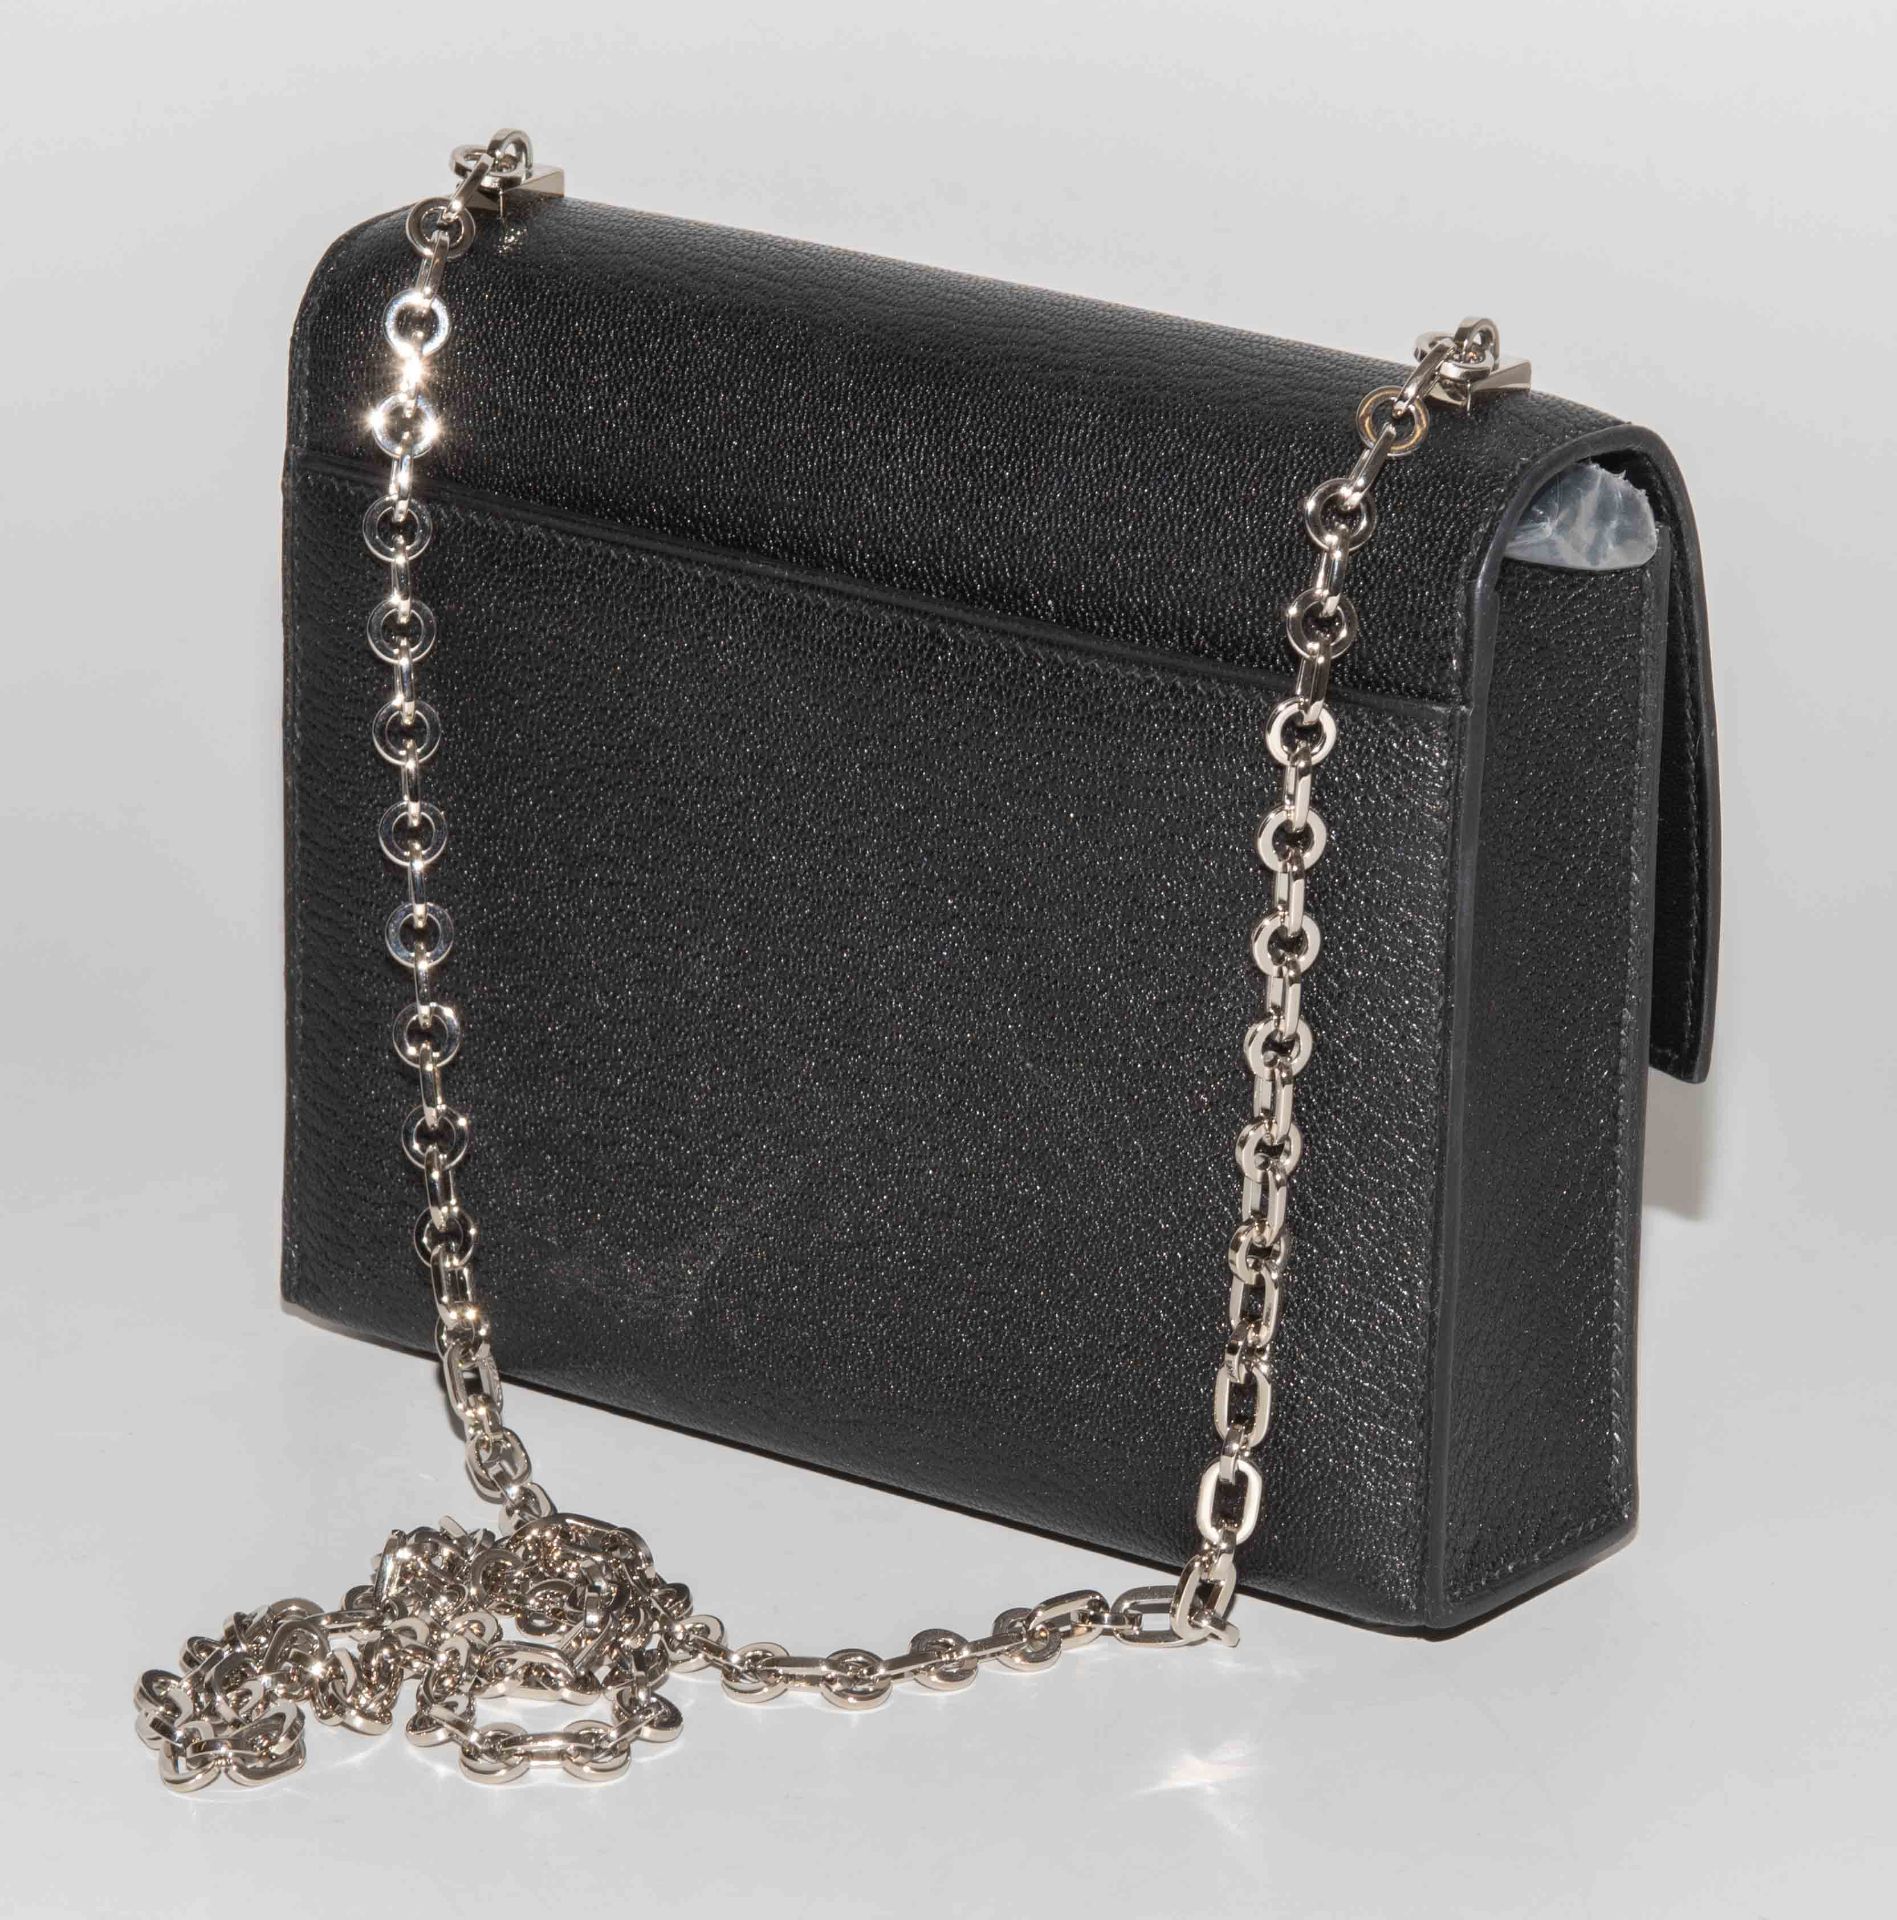 Hermès, Handtasche "Verrou Chaine Mini" - Image 3 of 9